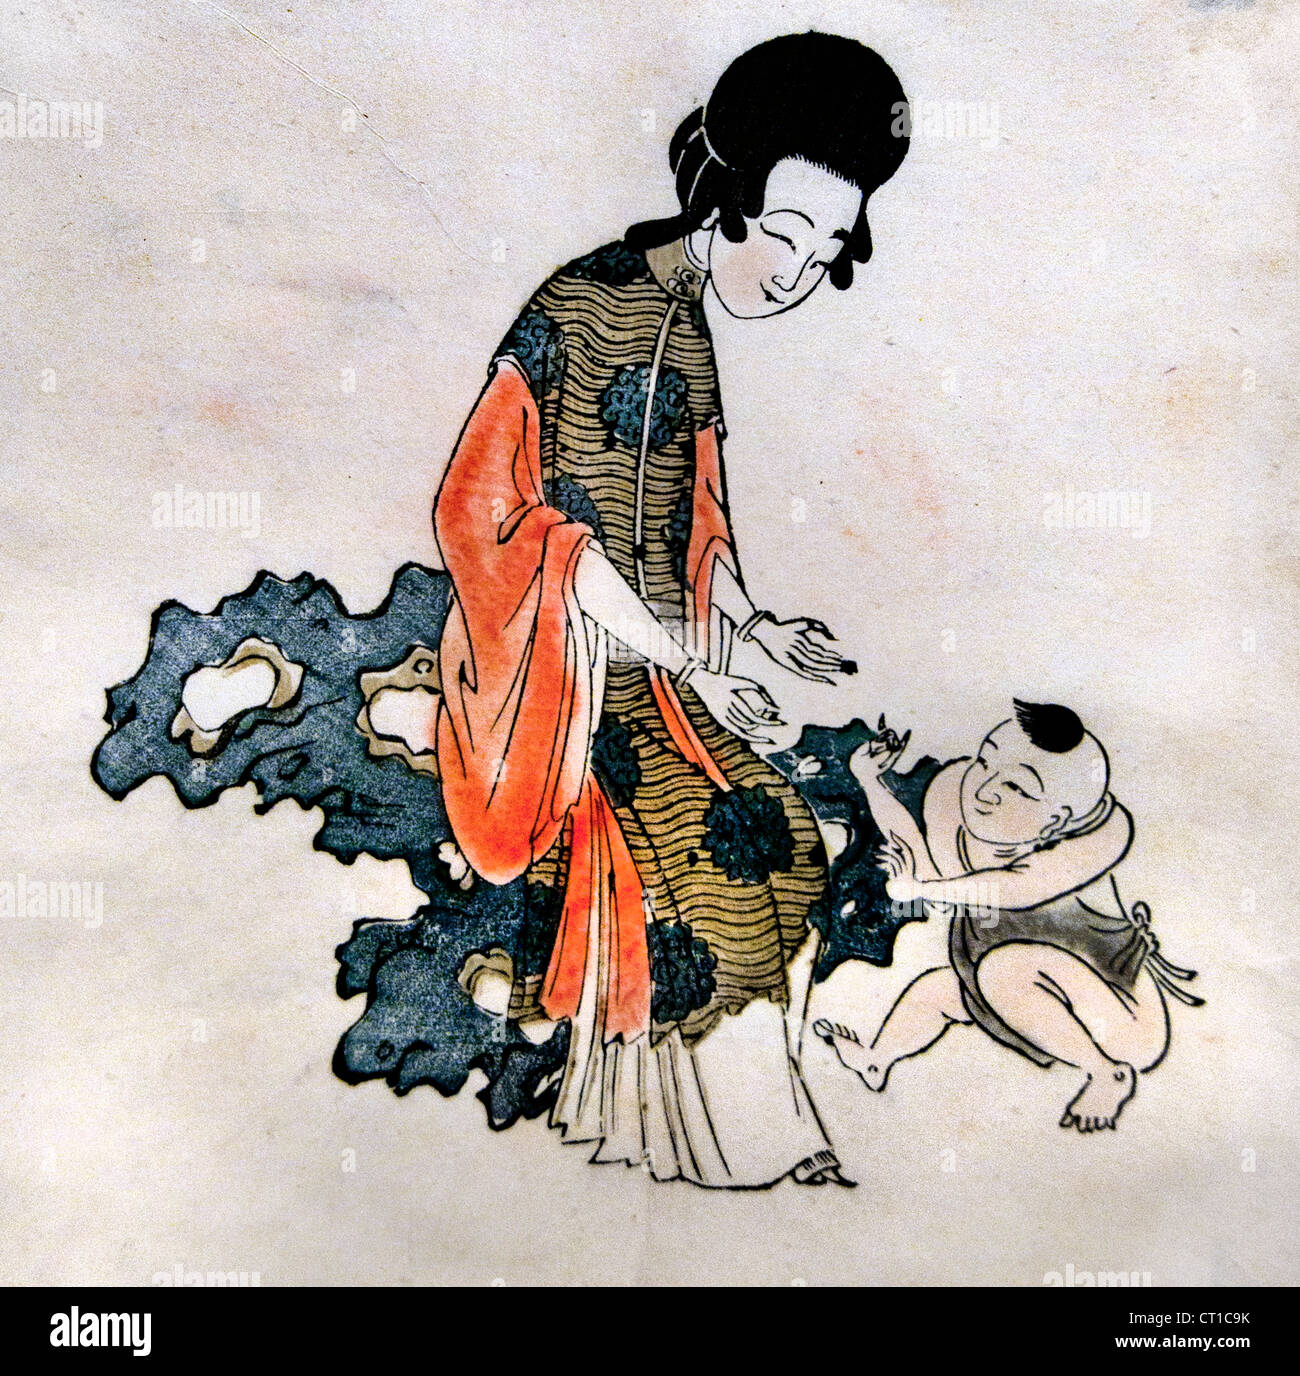 La beauté avec la dynastie Qing ca. 1644-1753 La Culture estampe couleur sur papier Chine chinois Banque D'Images